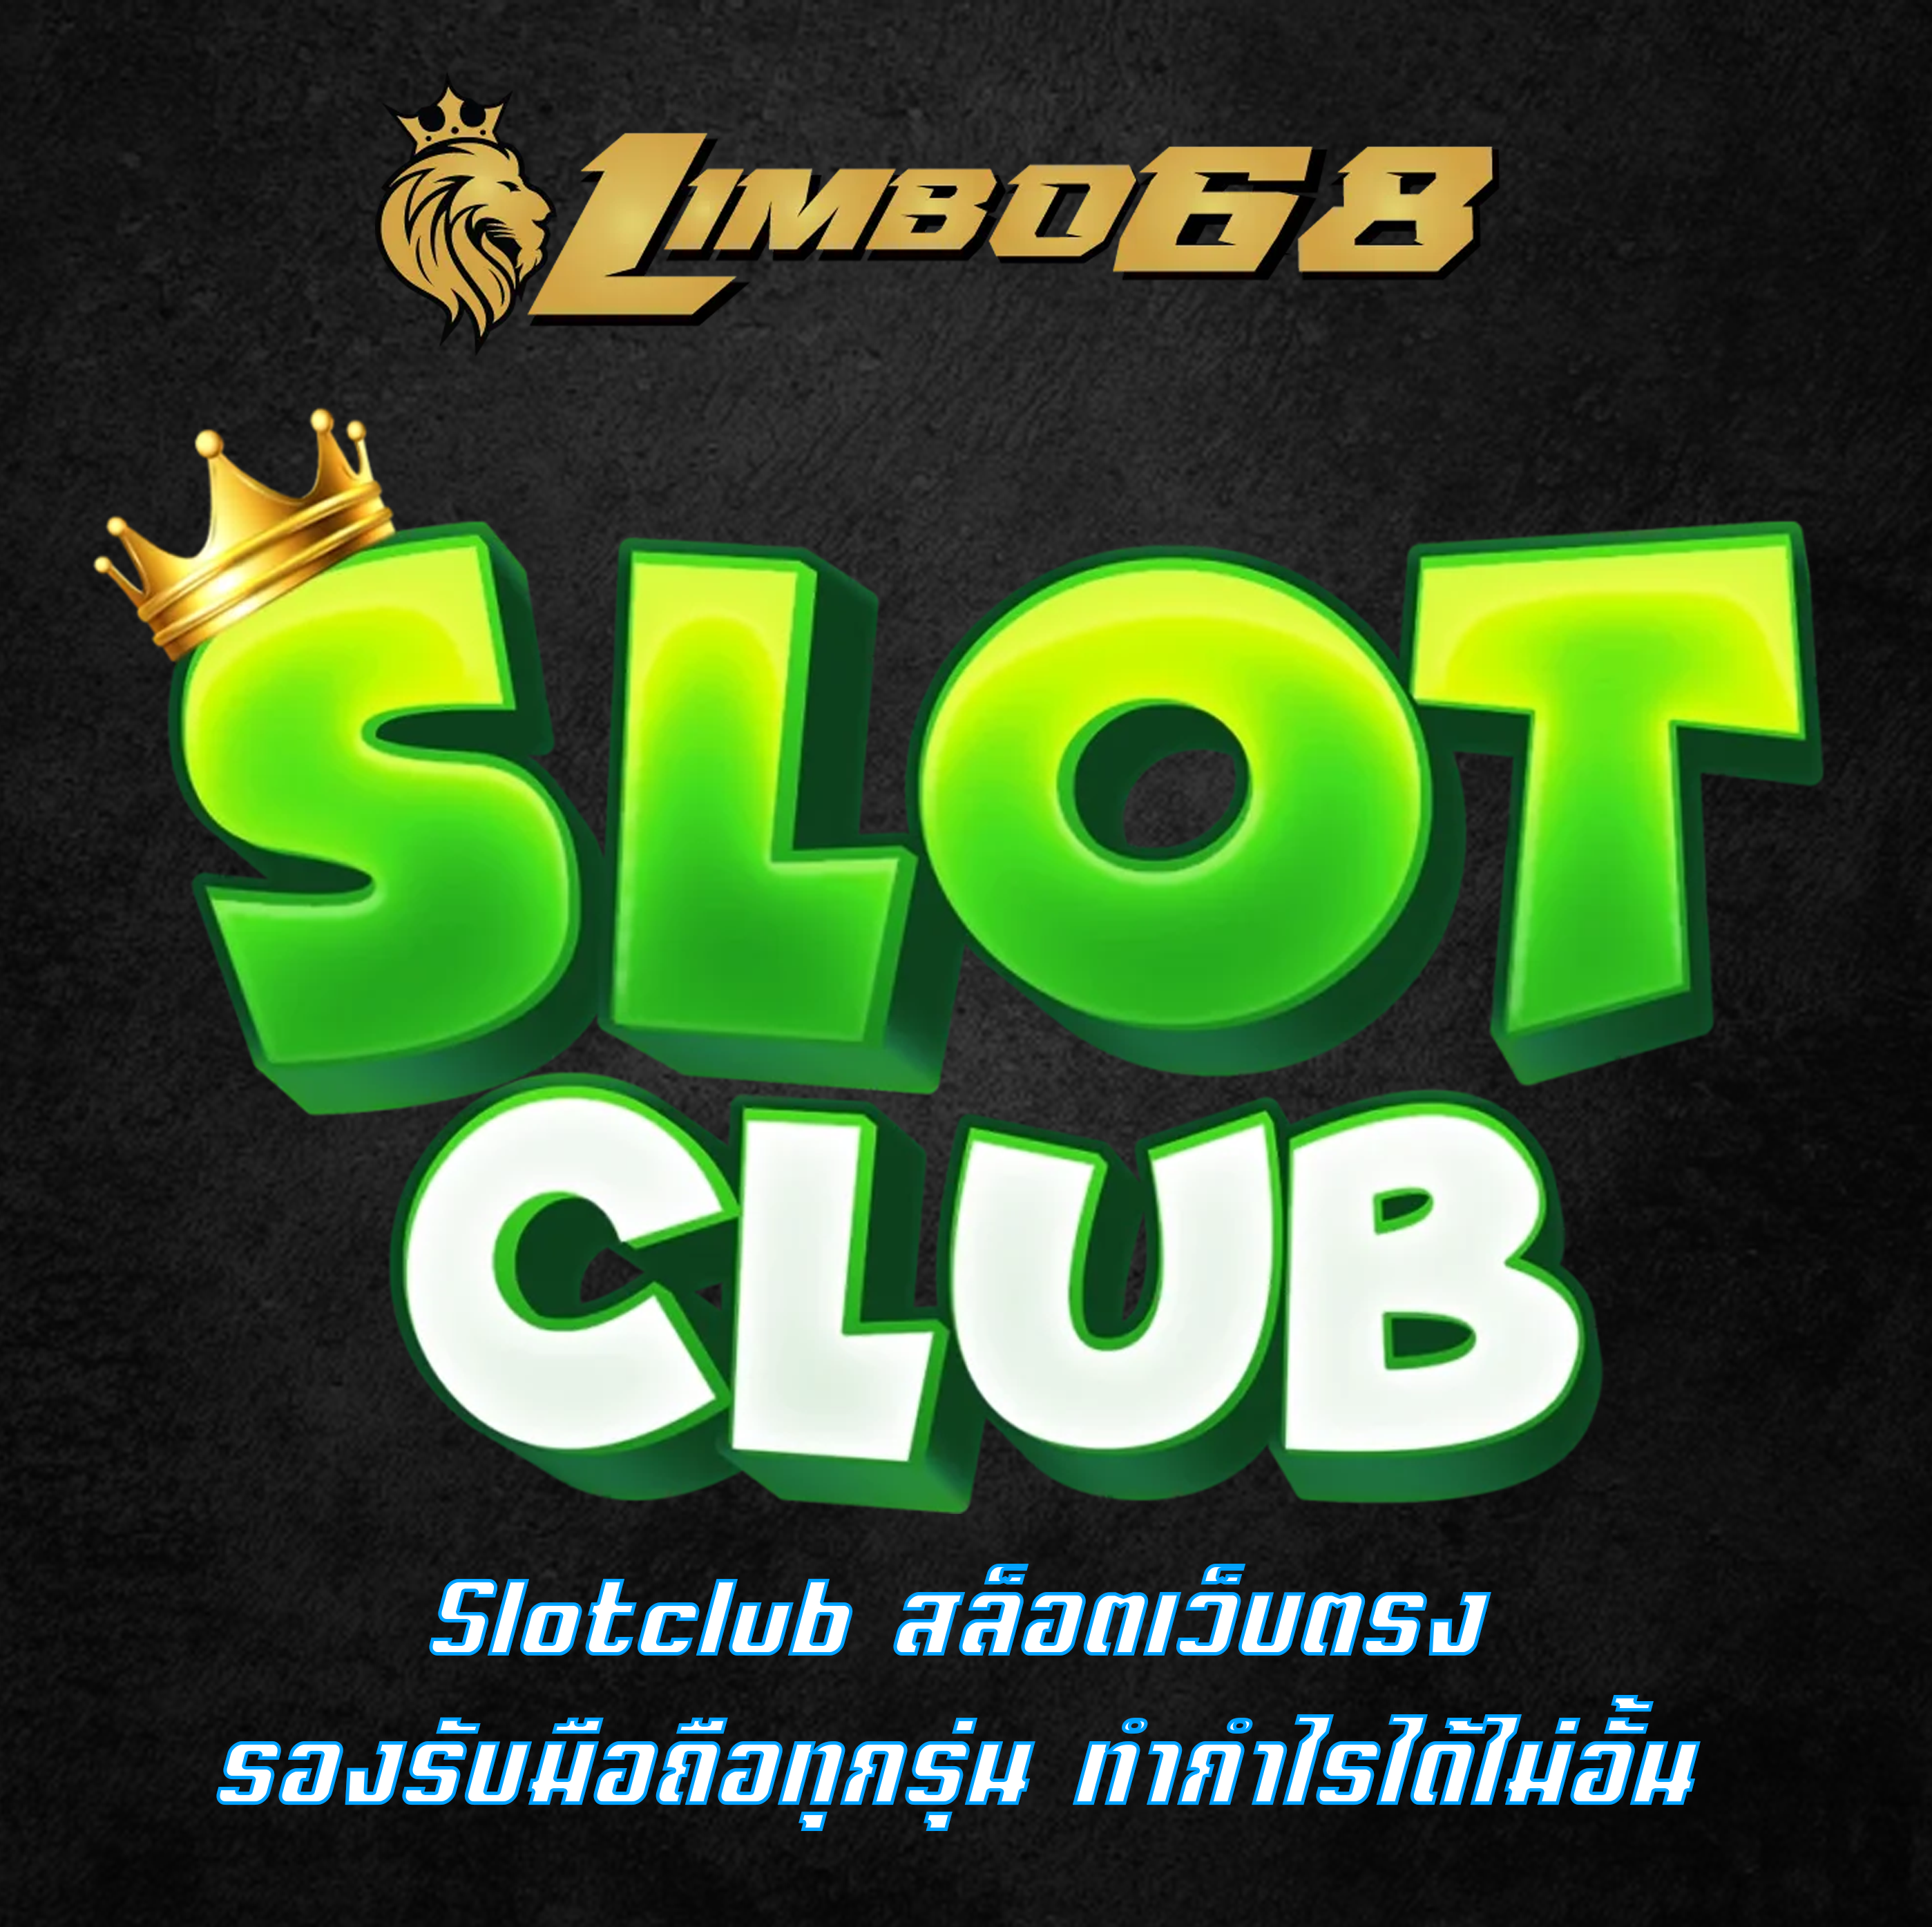 Slotclub